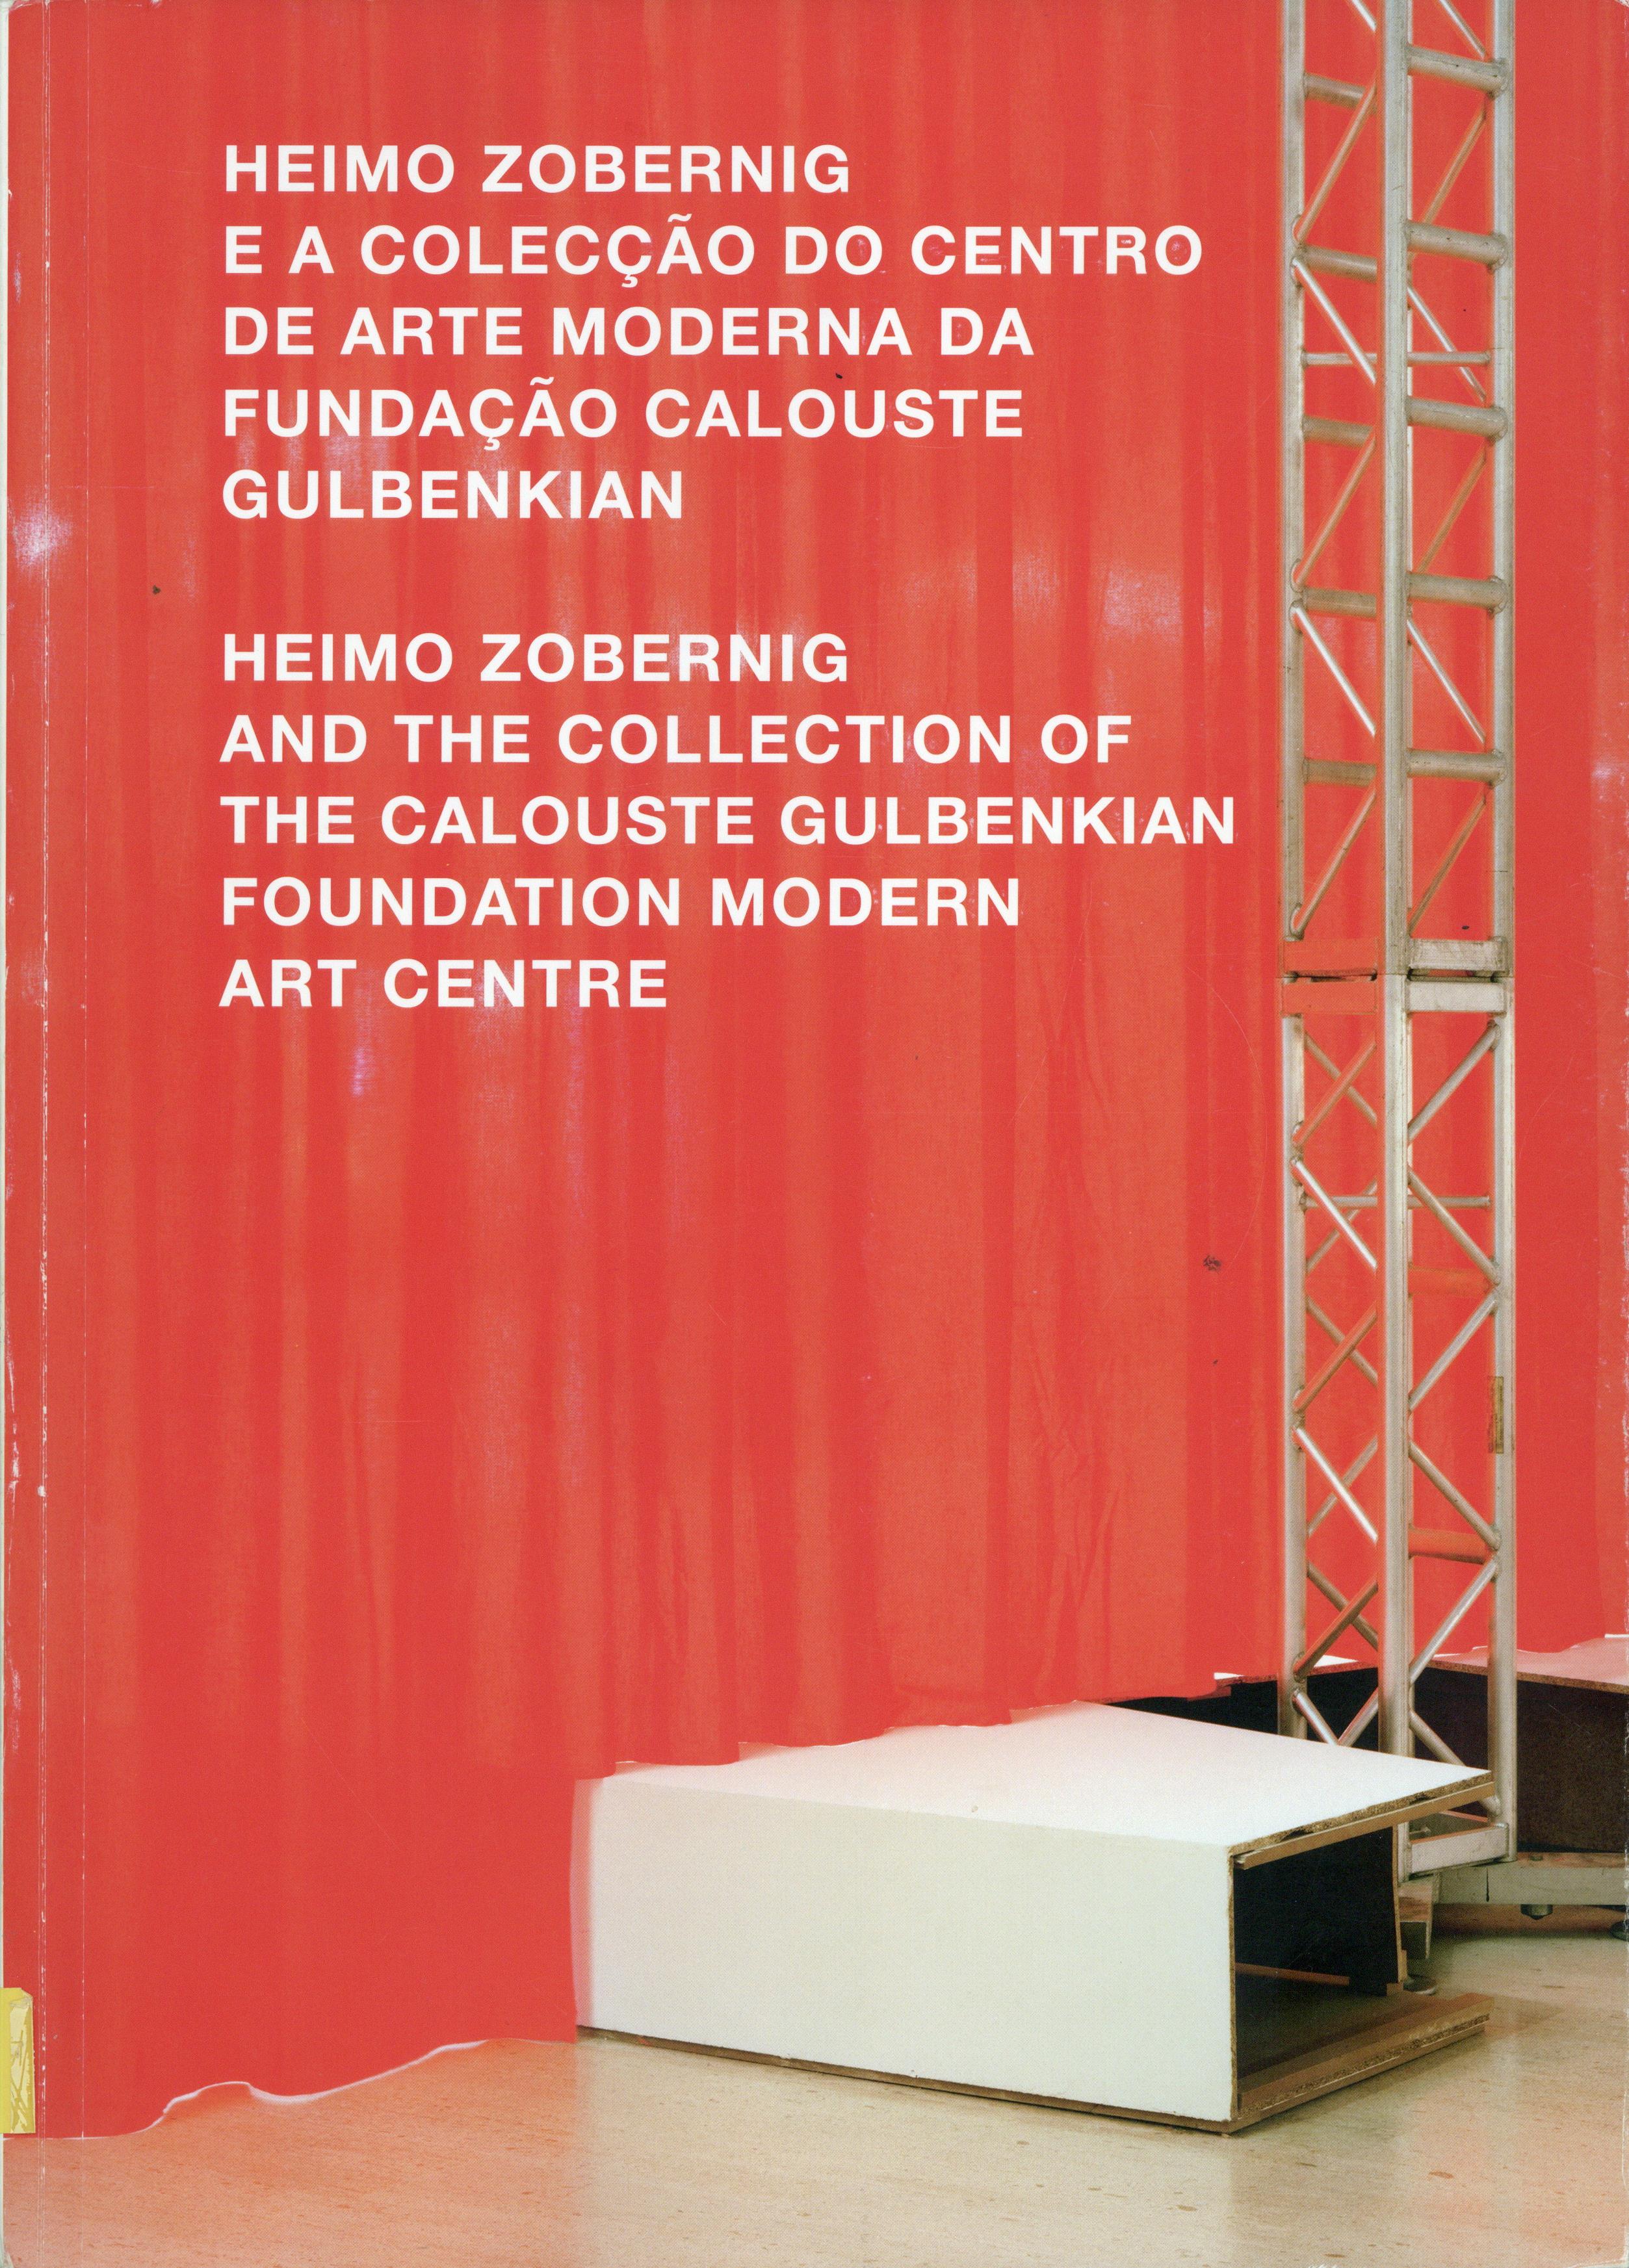 Heimo Zobernig e a Colecção da Tate / Heimo Zobernig e a Colecção do Centro de Arte Moderna da Fundação Calouste Gulbenkian